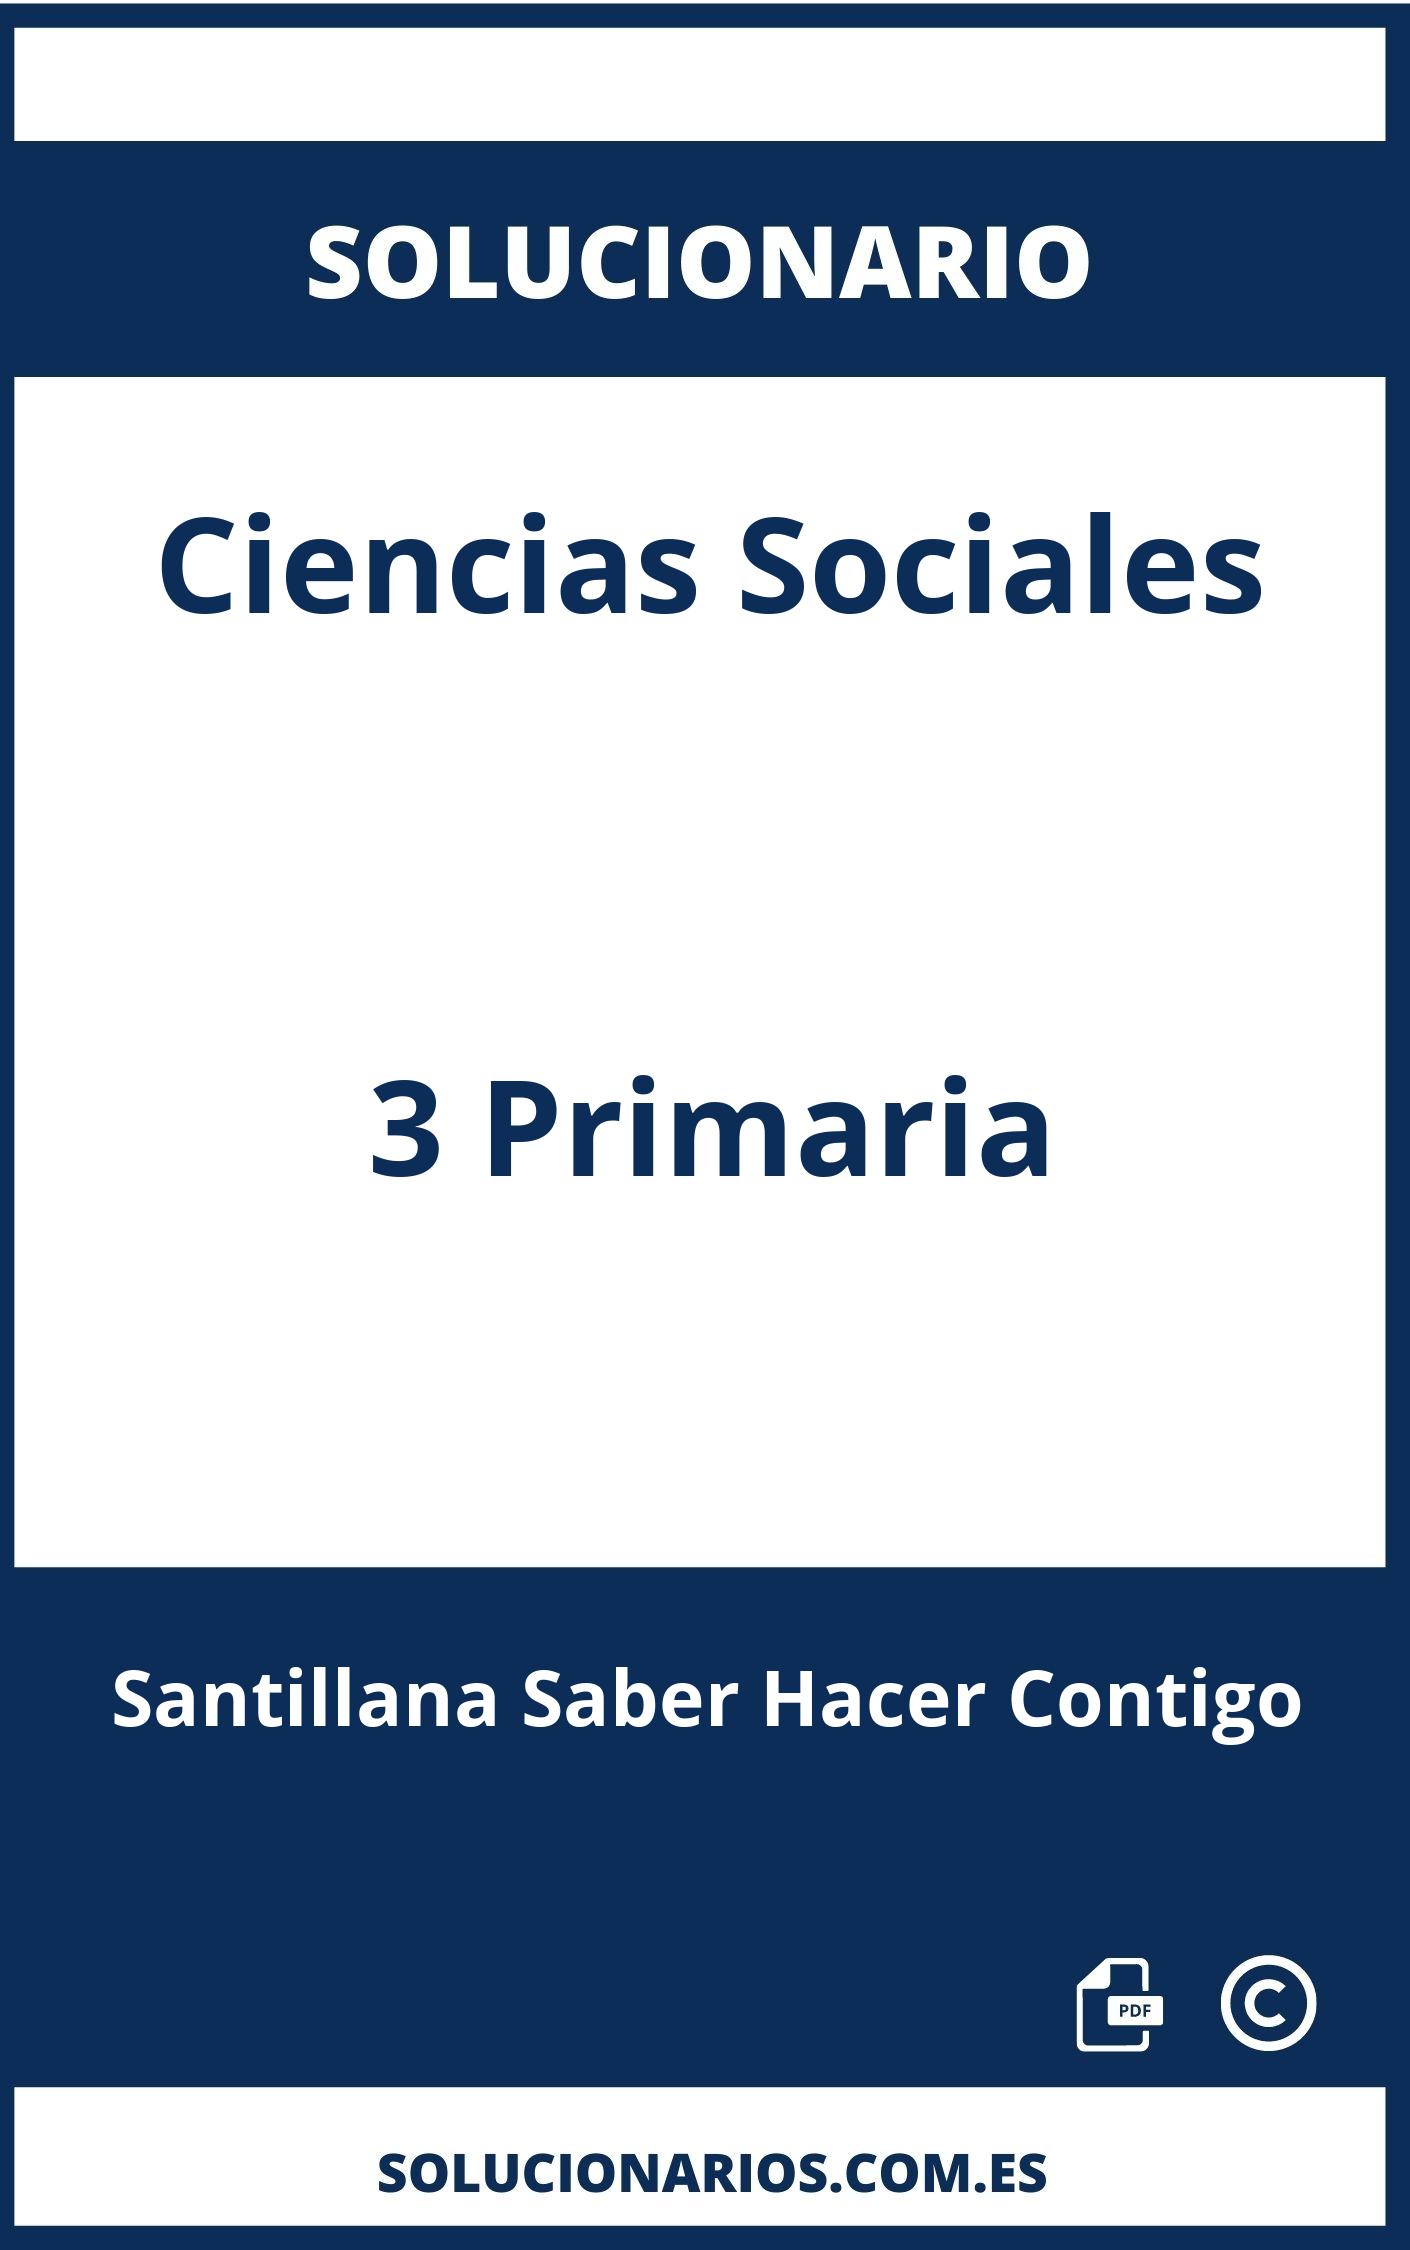 Solucionario Ciencias Sociales 3 Primaria Santillana Saber Hacer Contigo